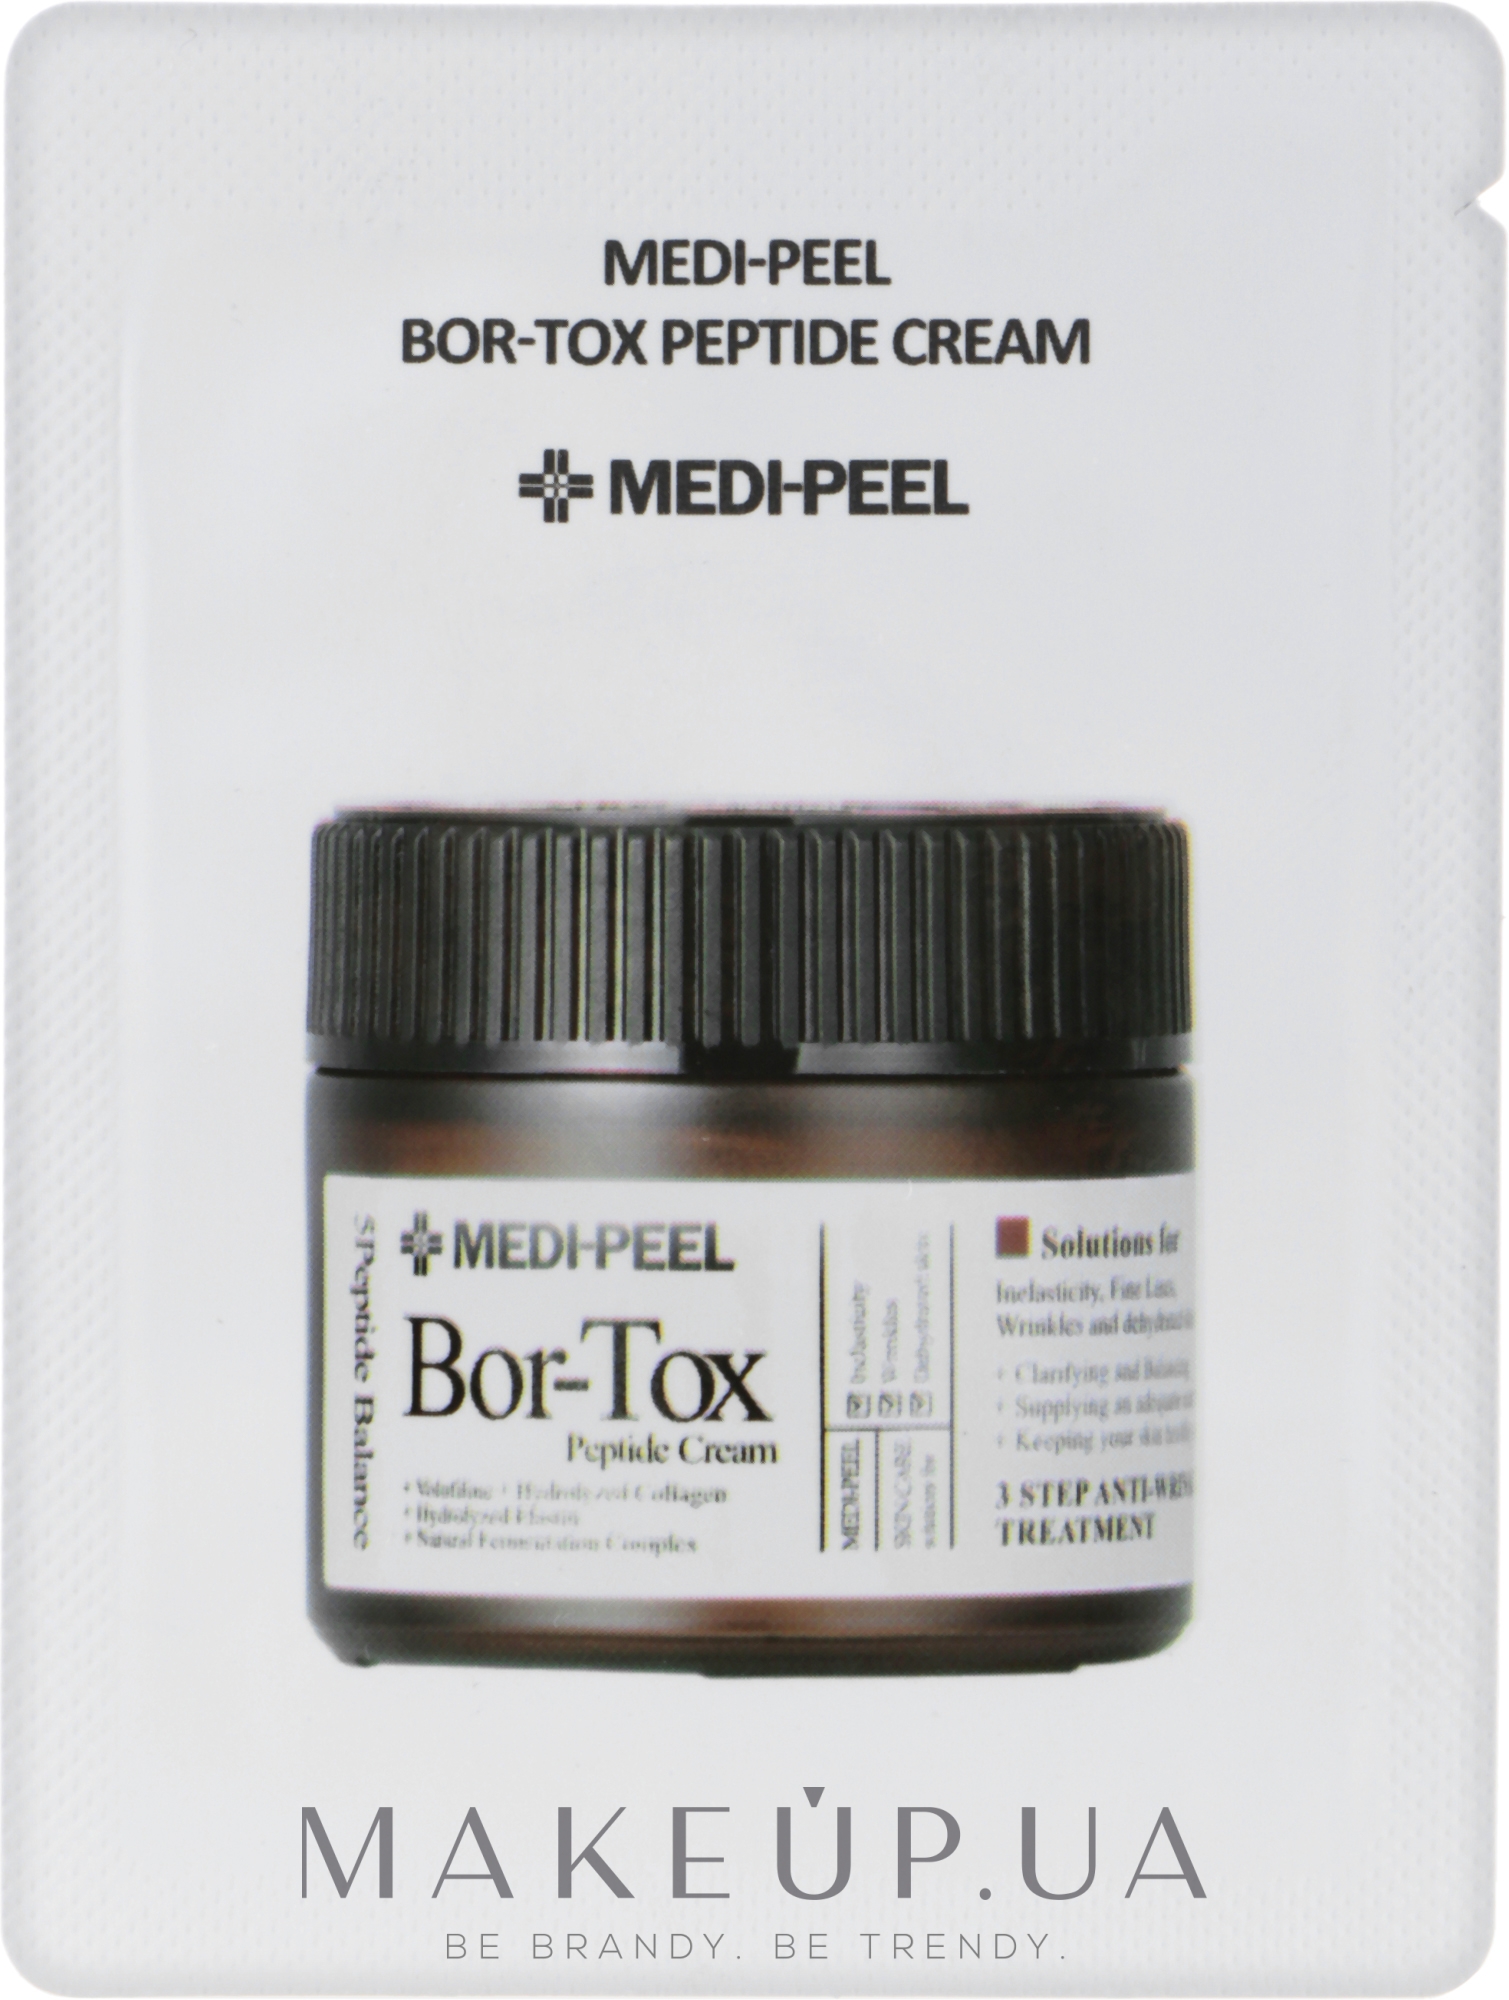 Лифтинг-крем с пептидным комплексом - Medi Peel Bor-Tox Peptide Cream (пробник) — фото 1.5ml